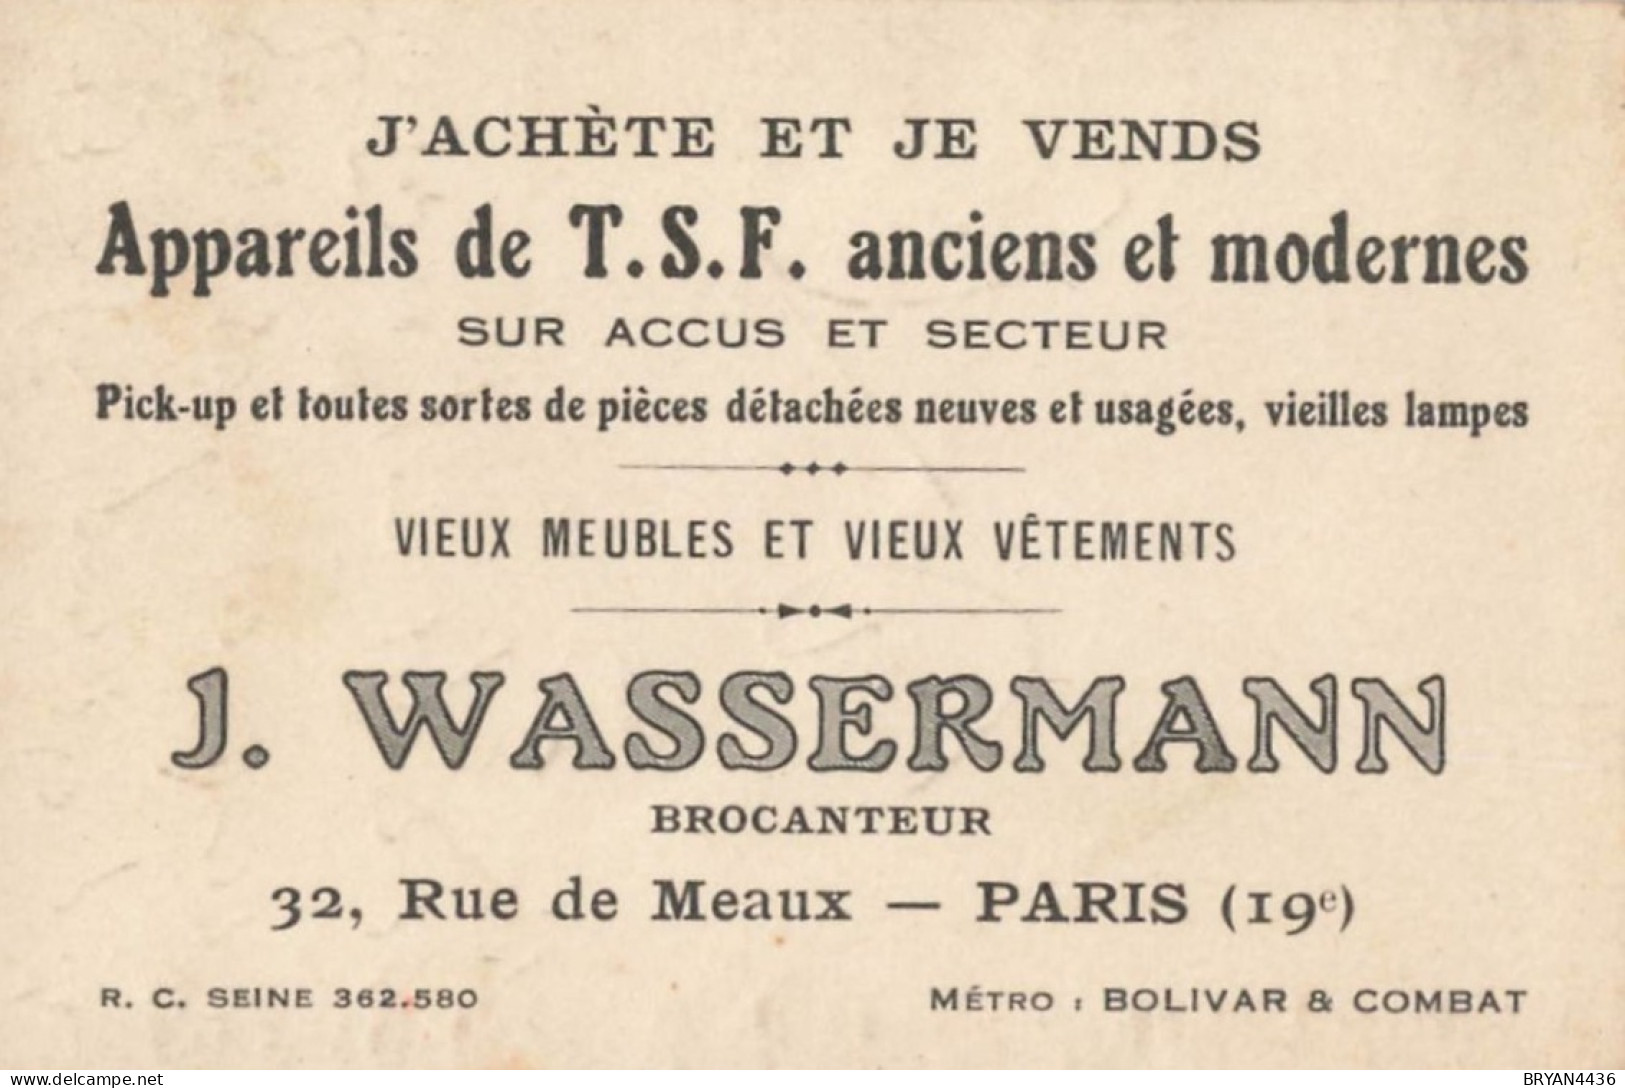 PARIS - 19 ème - BROCANTEUR  - J. WASSEMANN - 32, RUE De MEAUX - CARTE COMMERCIALE ANCIENNE - (7x10,5cm) - District 19